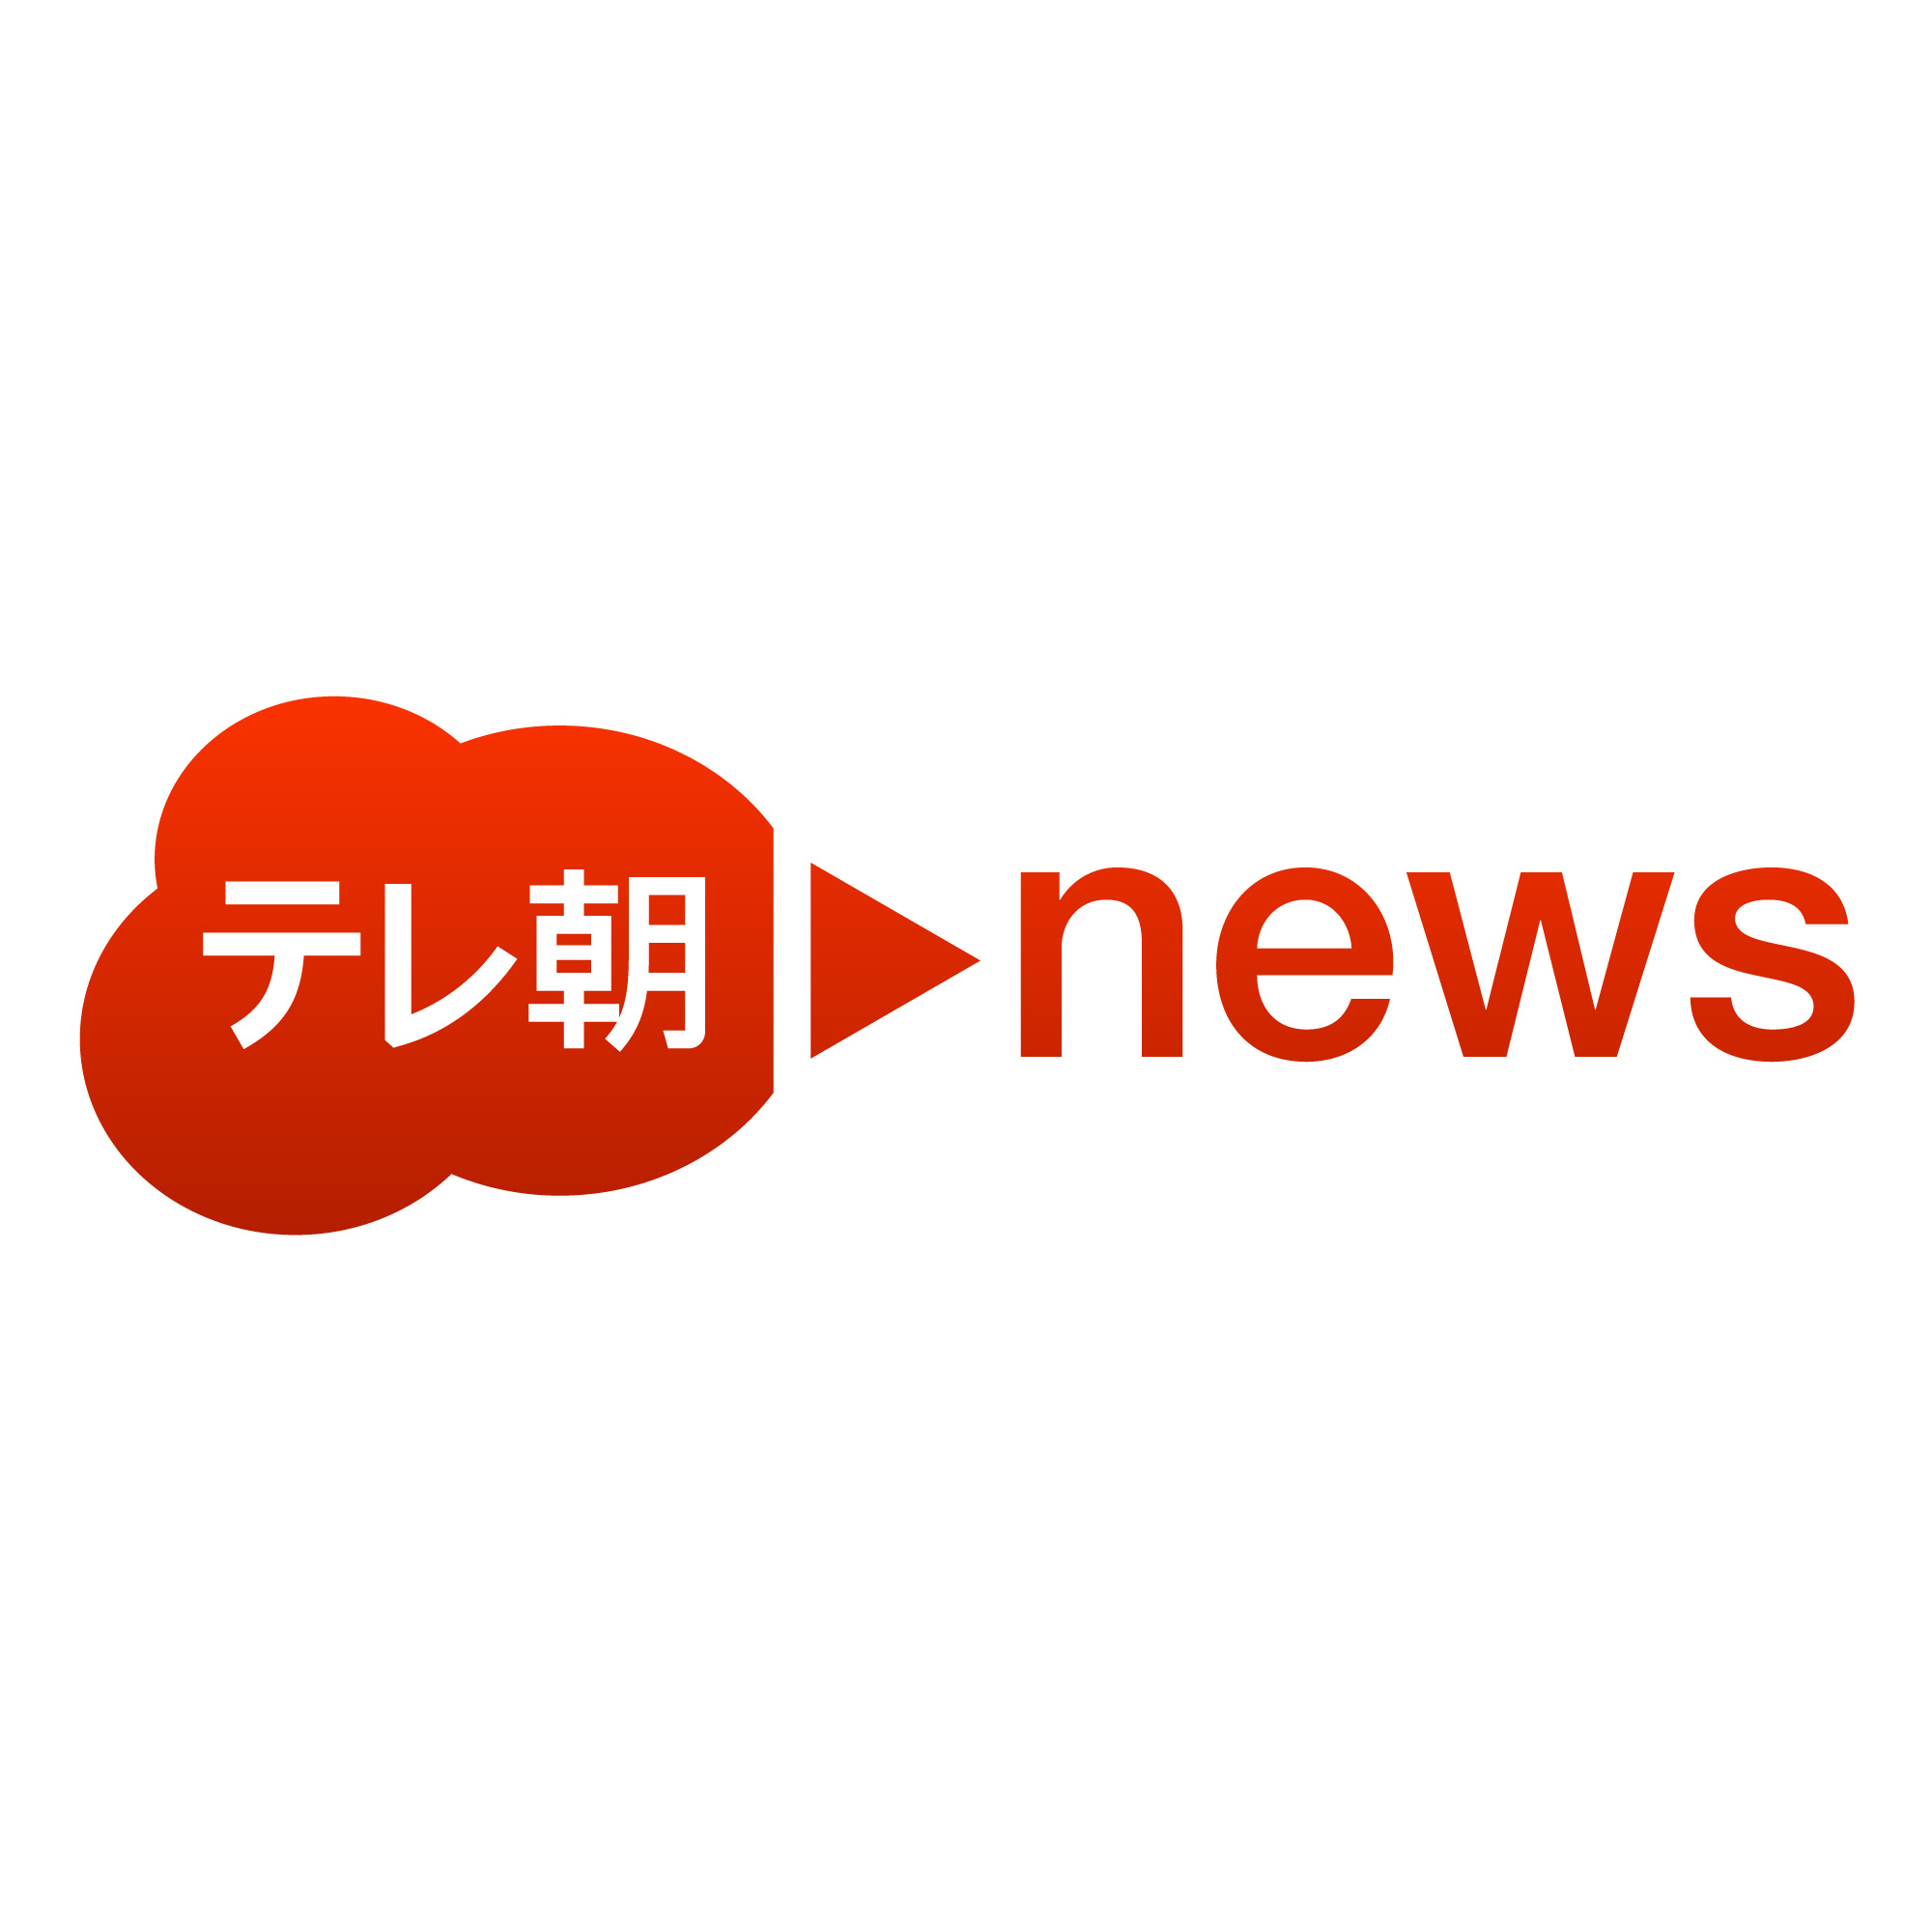 テレ朝news テレビ朝日のニュースサイト